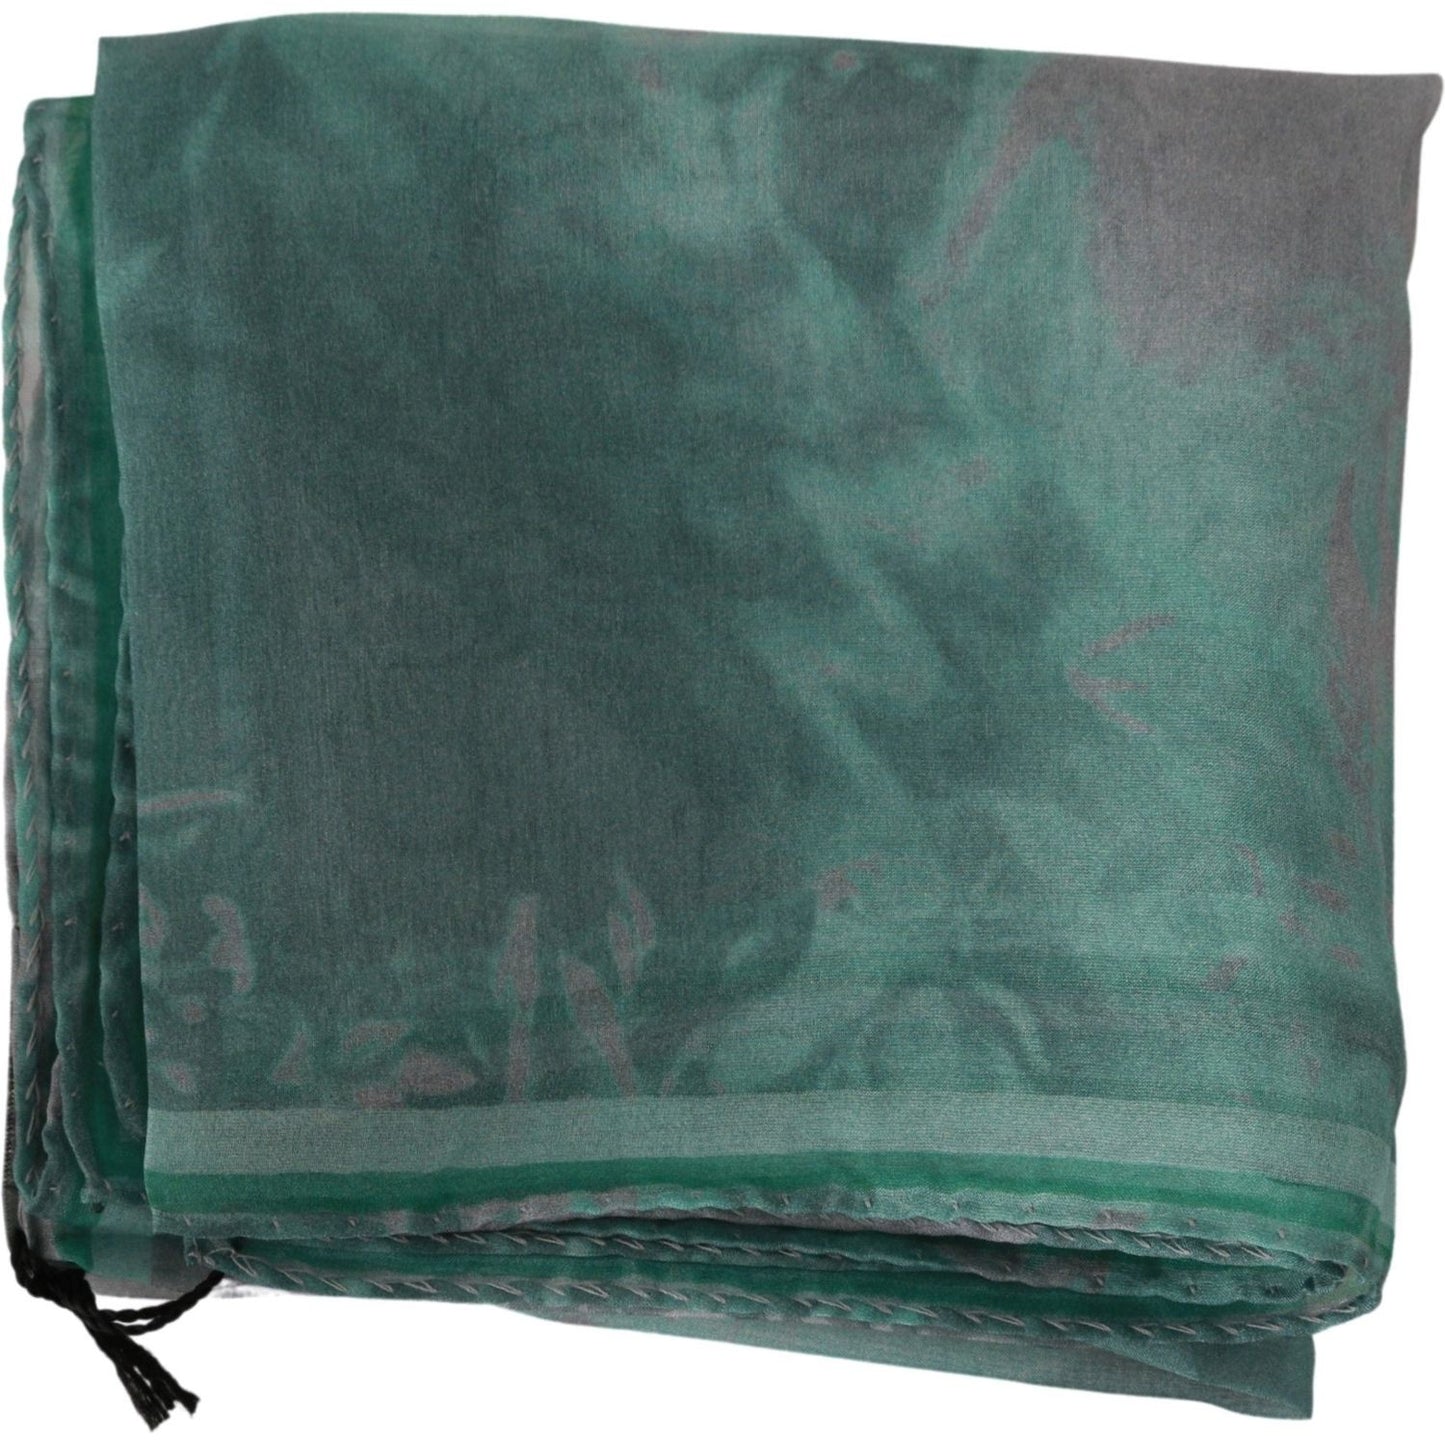 Costume National Elegant Silk Green Printed Scarf green-silk-shawl-foulard-wrap-scarf-1 IMG_0309-1-55857c3b-0c4.jpg